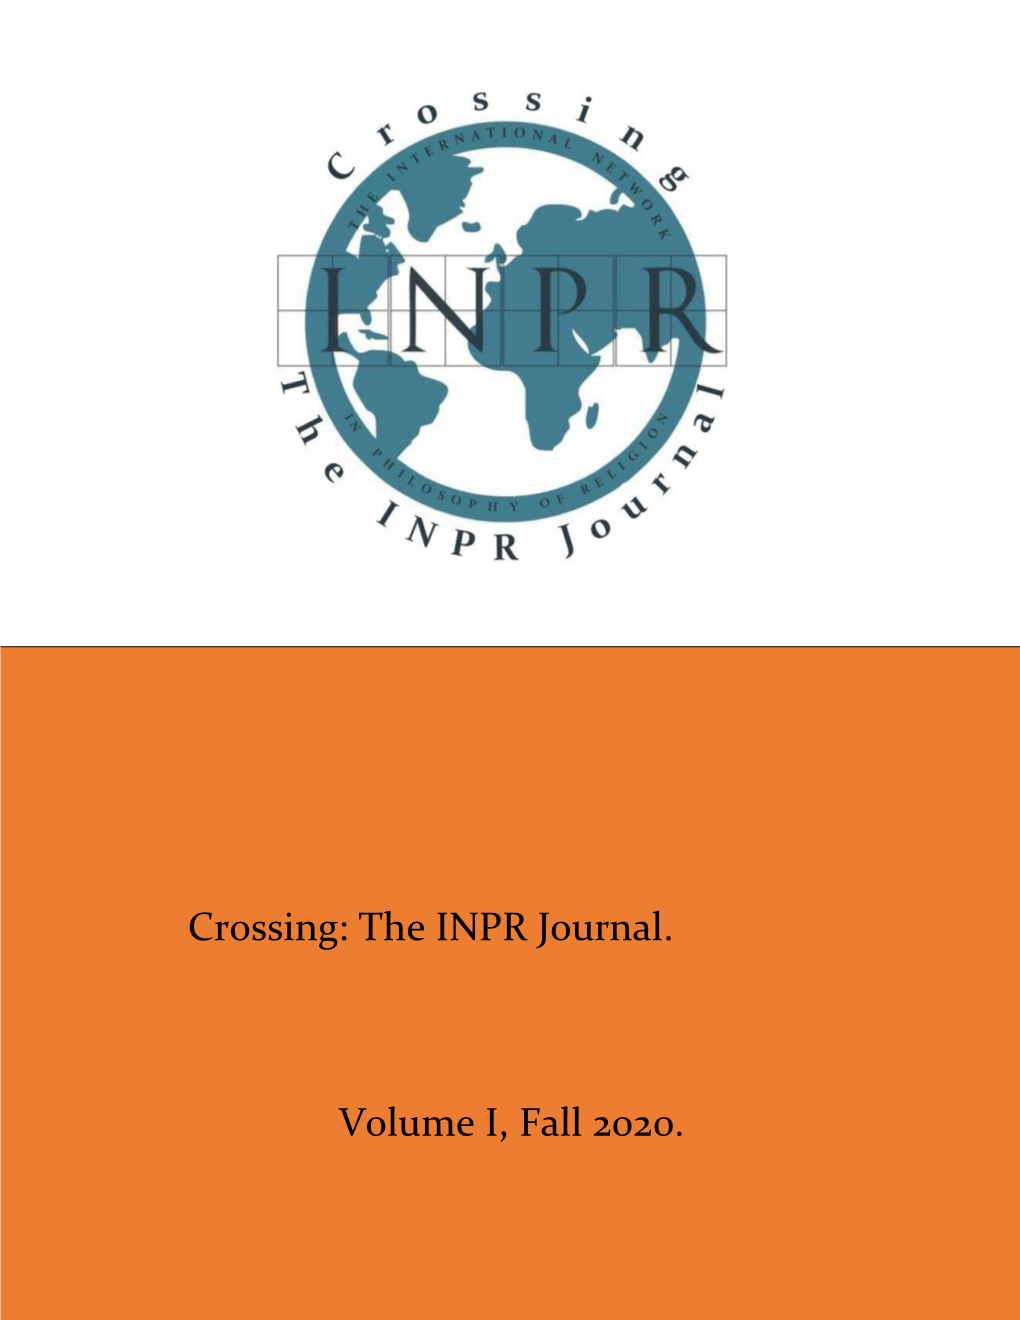 The INPR Journal. Volume I, Fall 2020